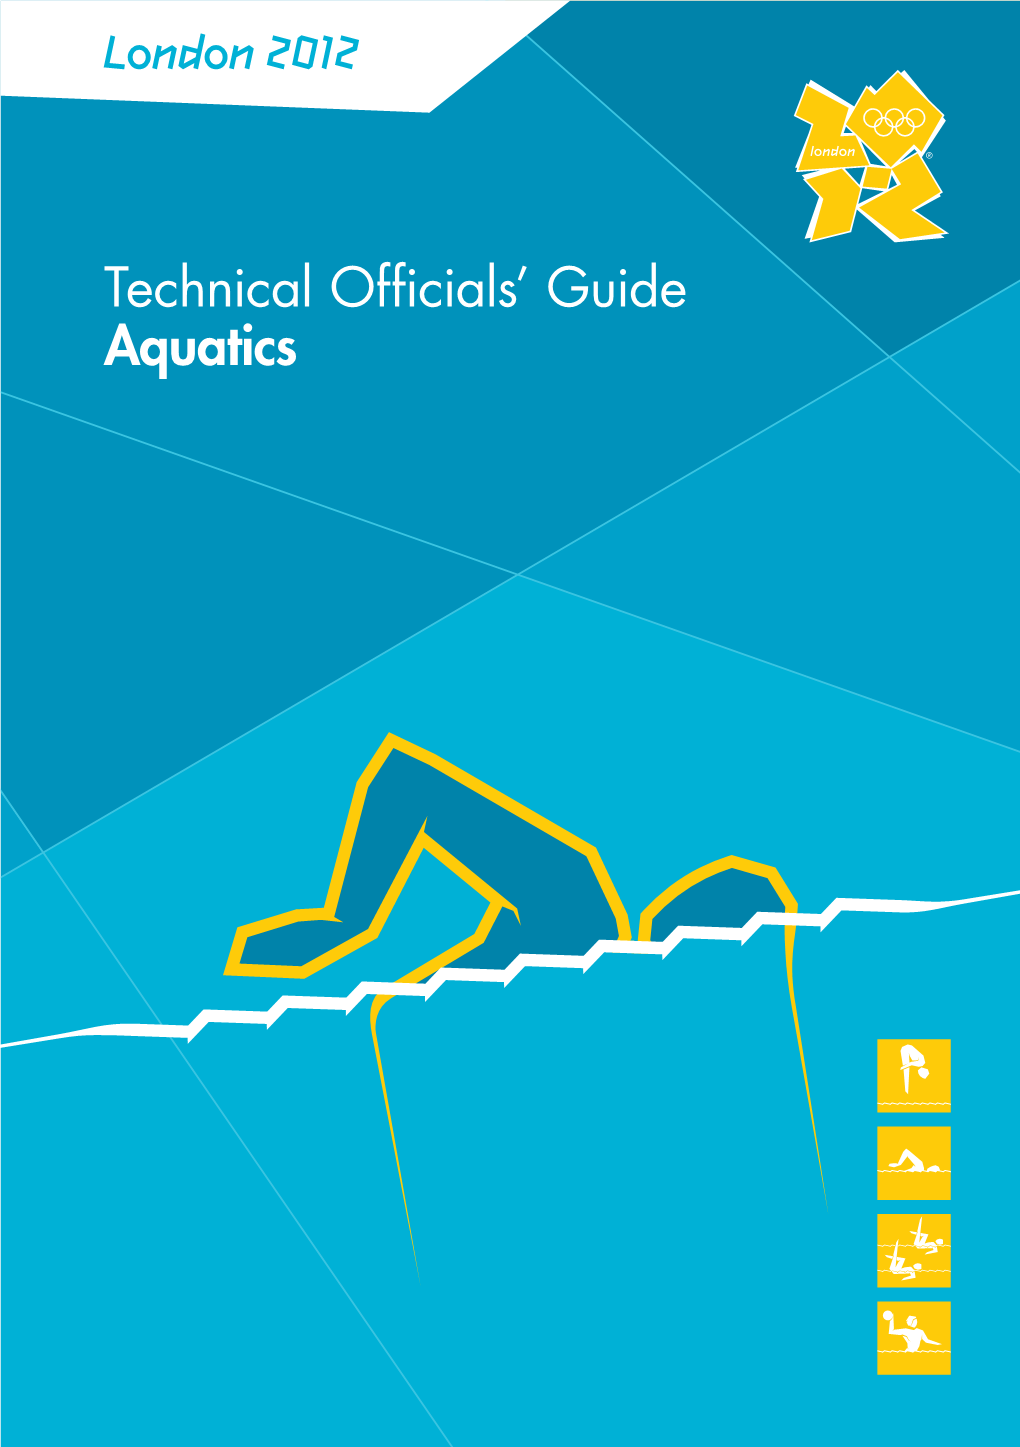 London 2012 Technical Officials' Guide Aquatics